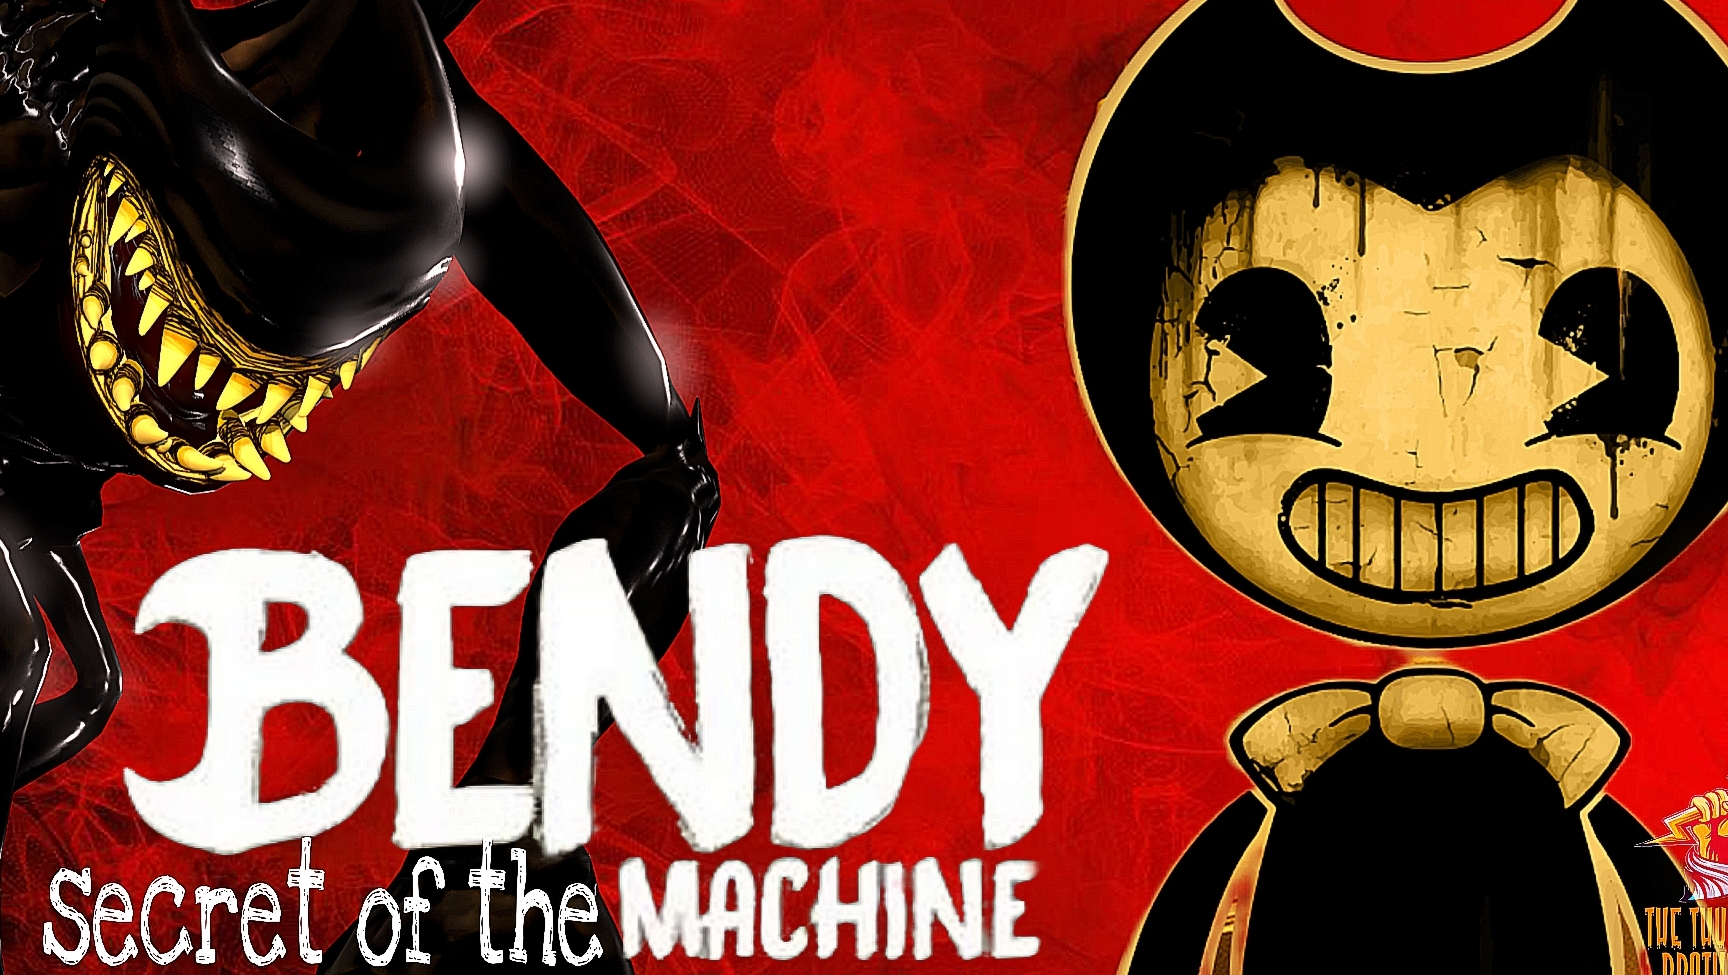 BENDY secrets of the machine ➣ Прохождение БЭНДИ секрет машины